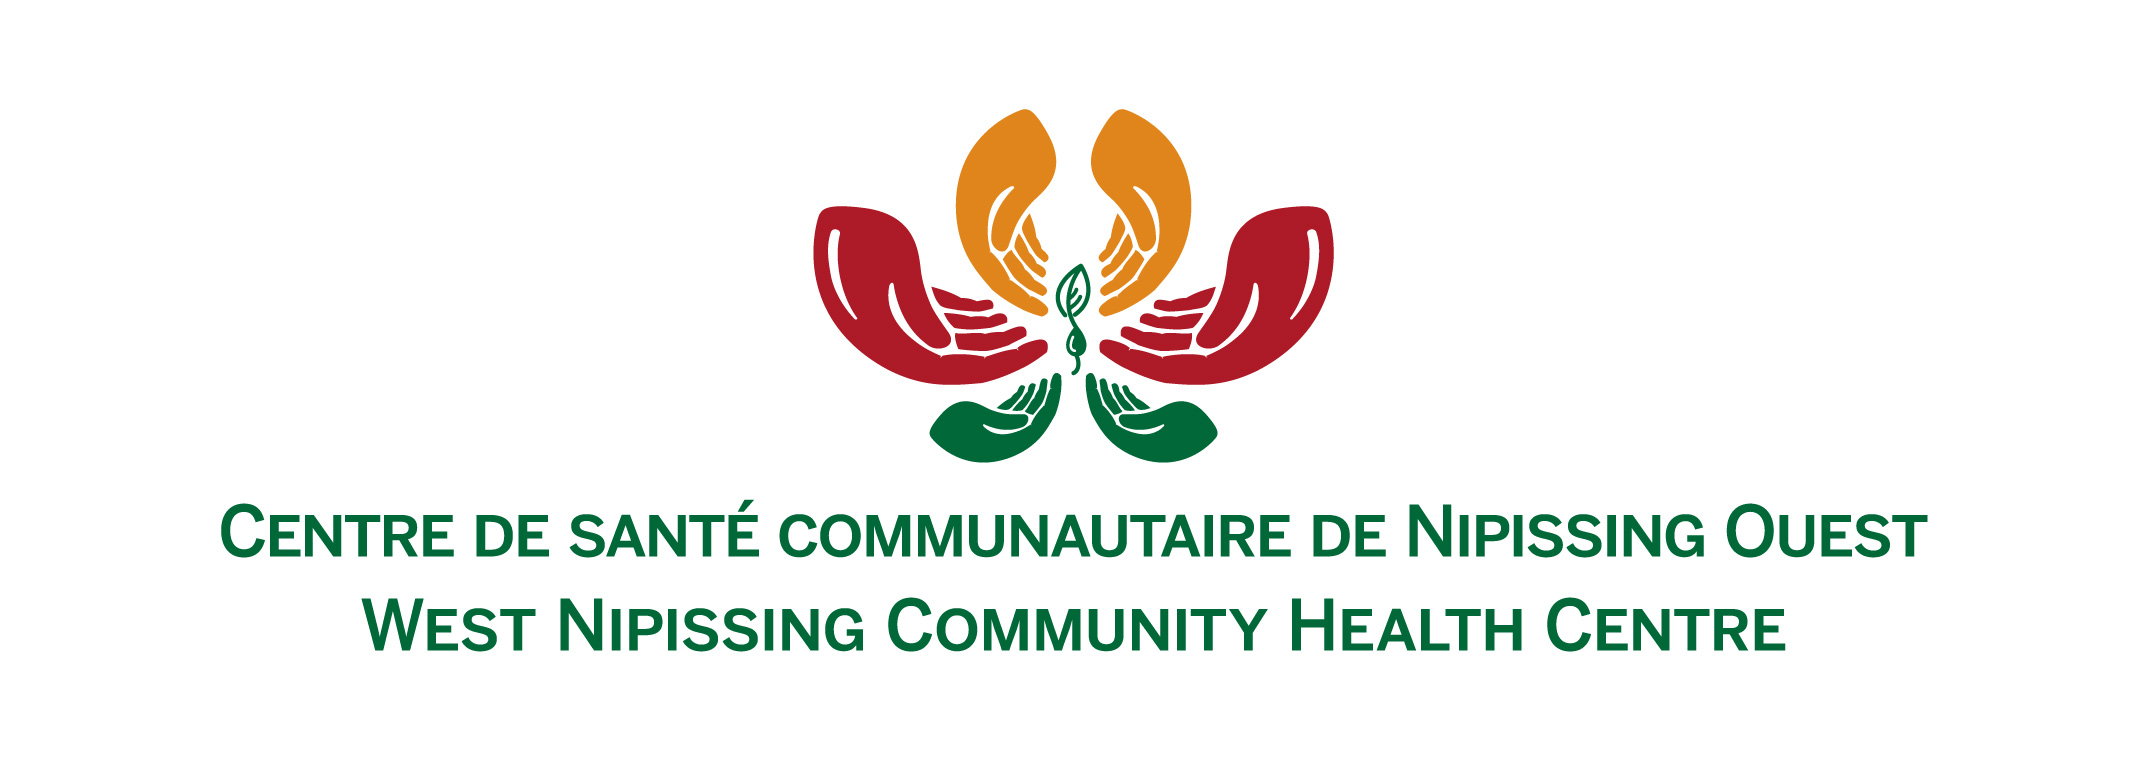 West Nipissing Community Health Centre / Centre de santé communautaire de Nipissing Ouest